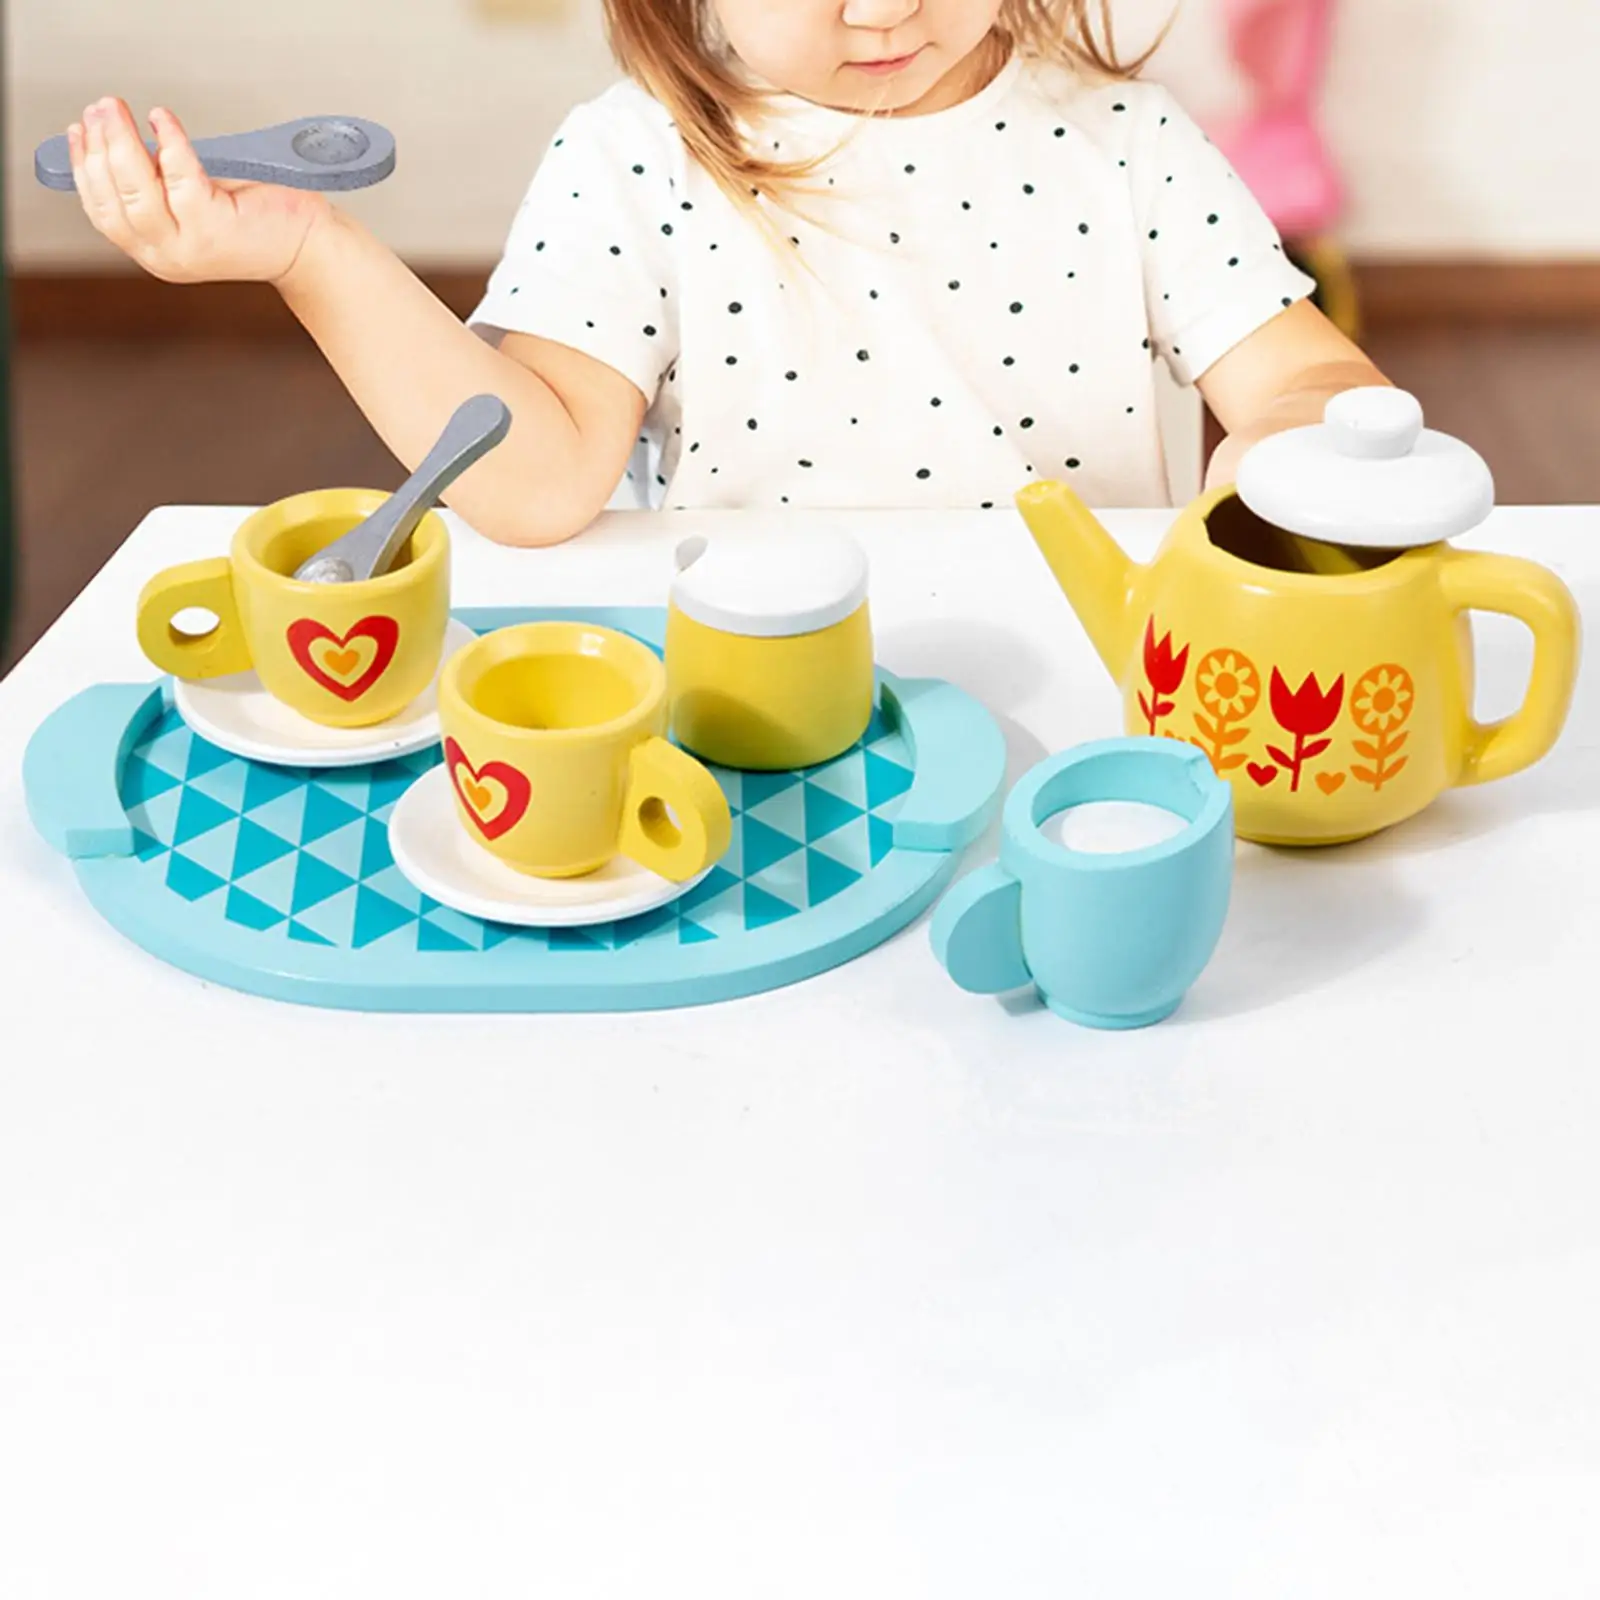 8x Montessori Toy Kitchen Playset Kitchen Tableware Set Wooden Tea Set for Birthday Party Gift Kids Tea Party Tea Set Toddlers